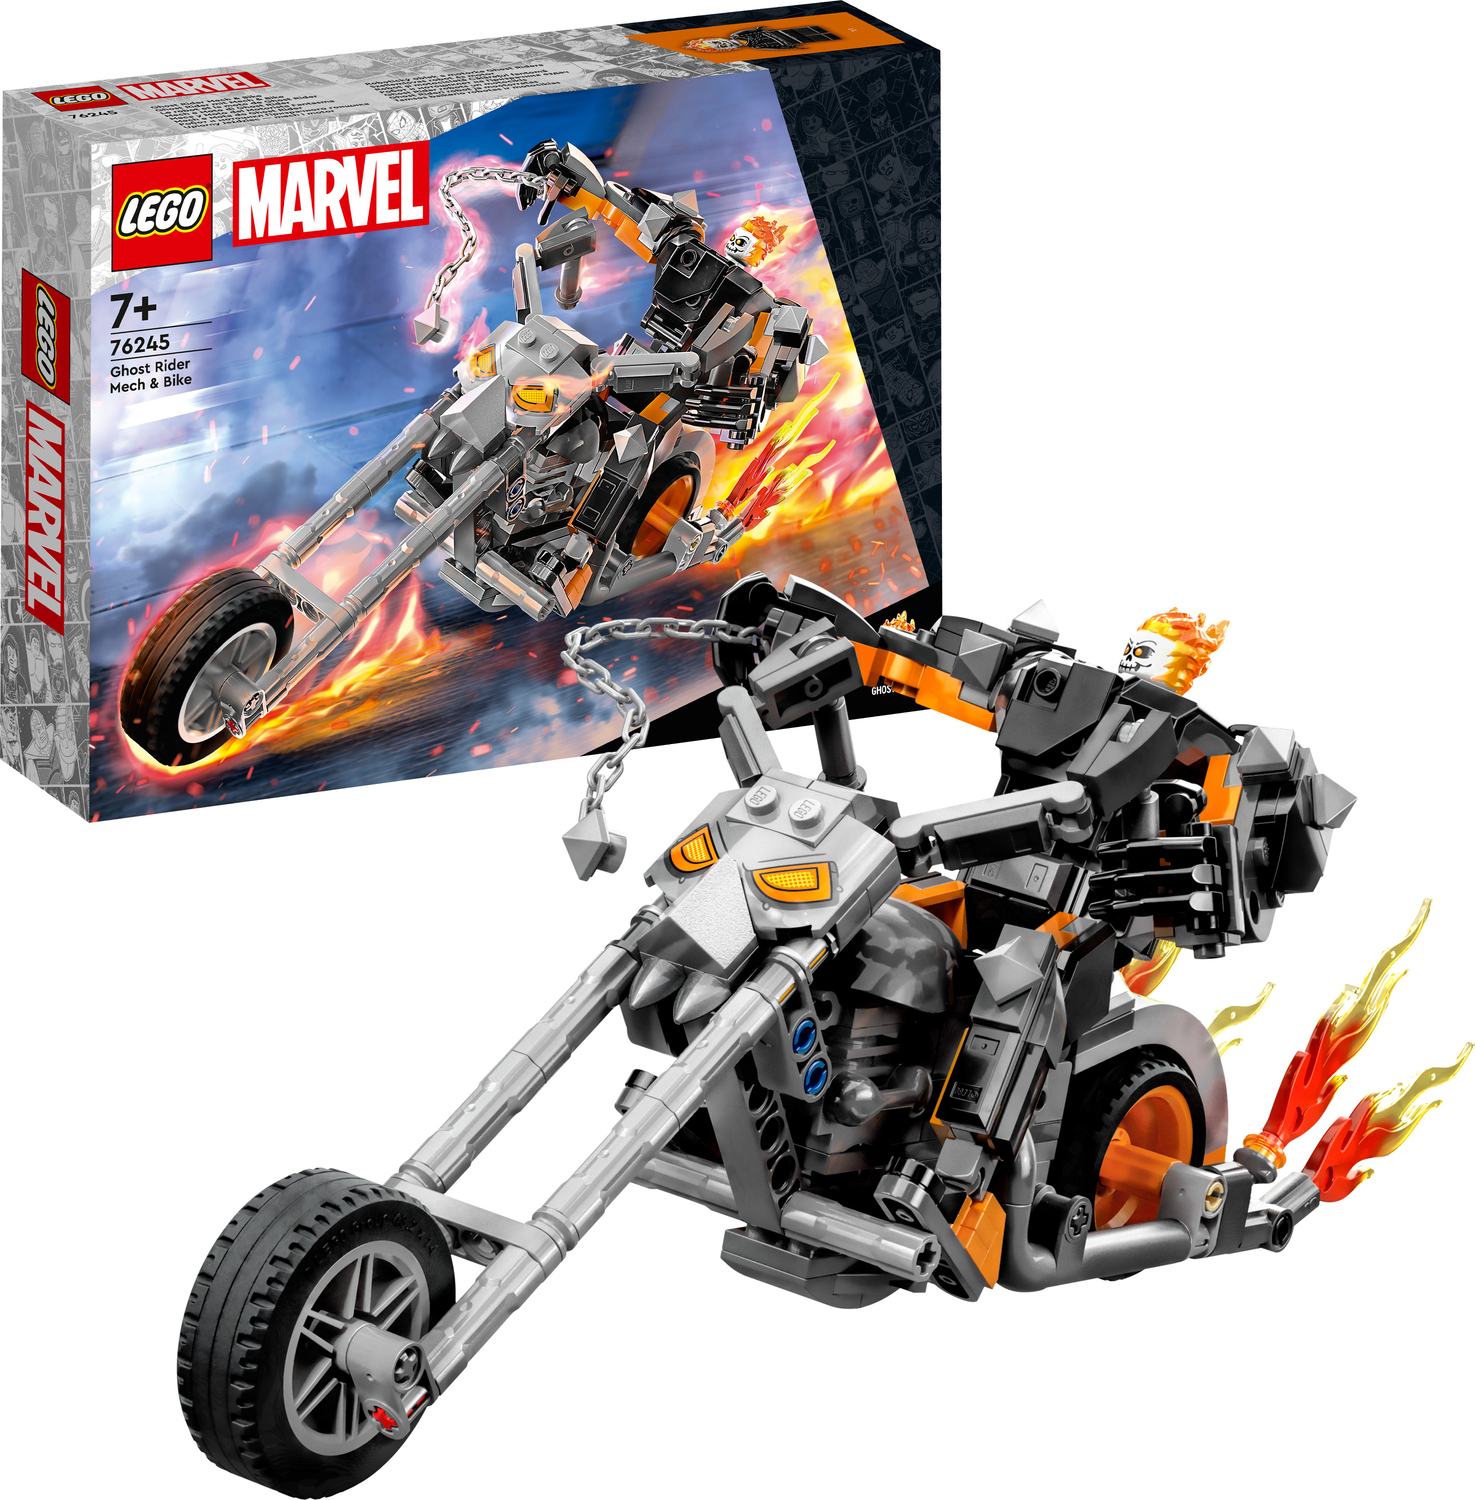 Stænke sydvest Alvorlig Lego Marvel 76245 Ghost Rider Mech and Bike - Teaching Toys and Books